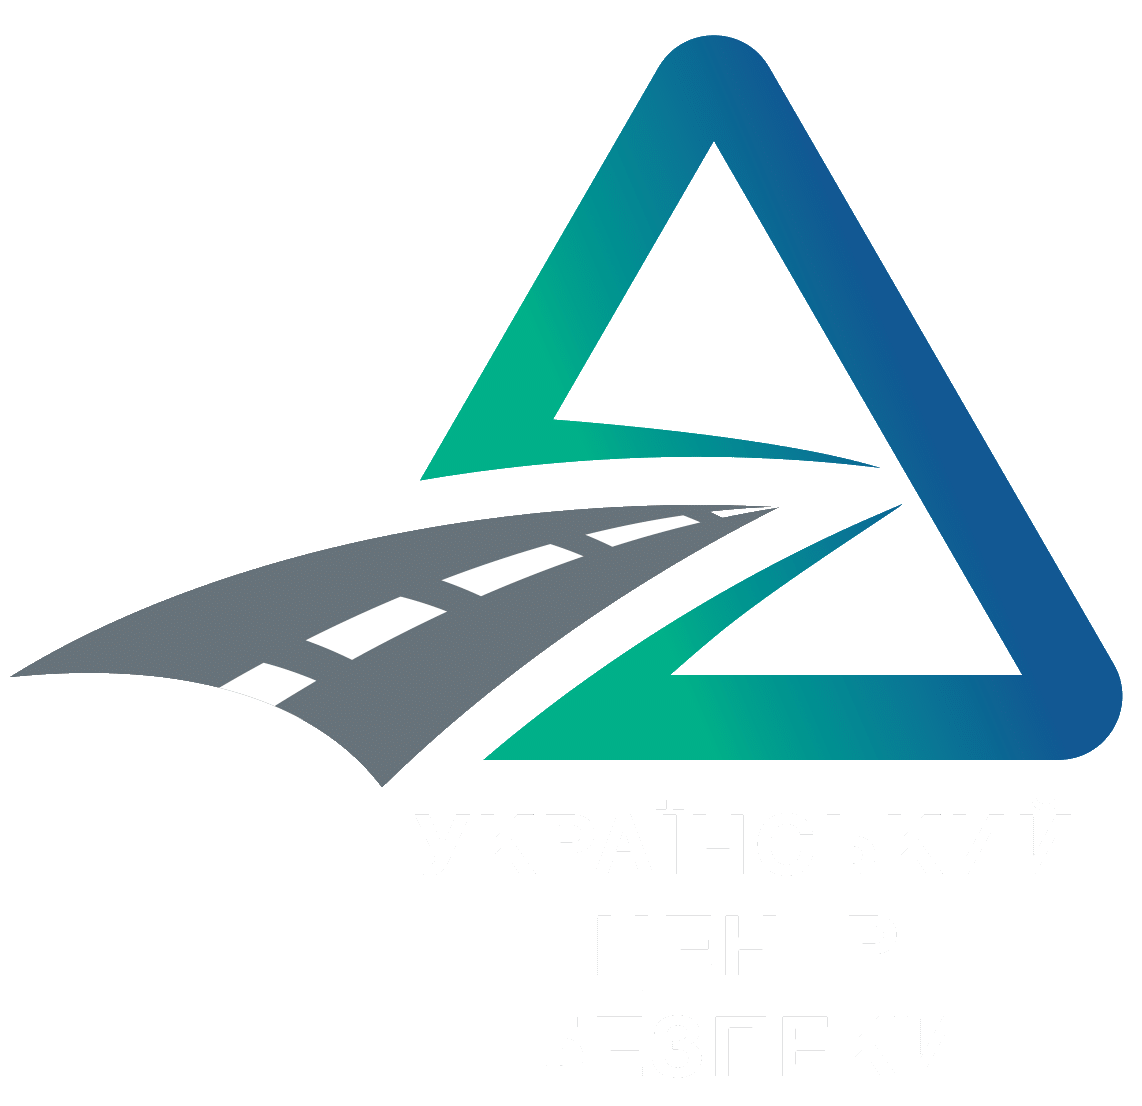 ЄК працює над уніфікацією перевірок транспорту, пов’язаних з часом водіння та відпочинку | Український центр безпеки